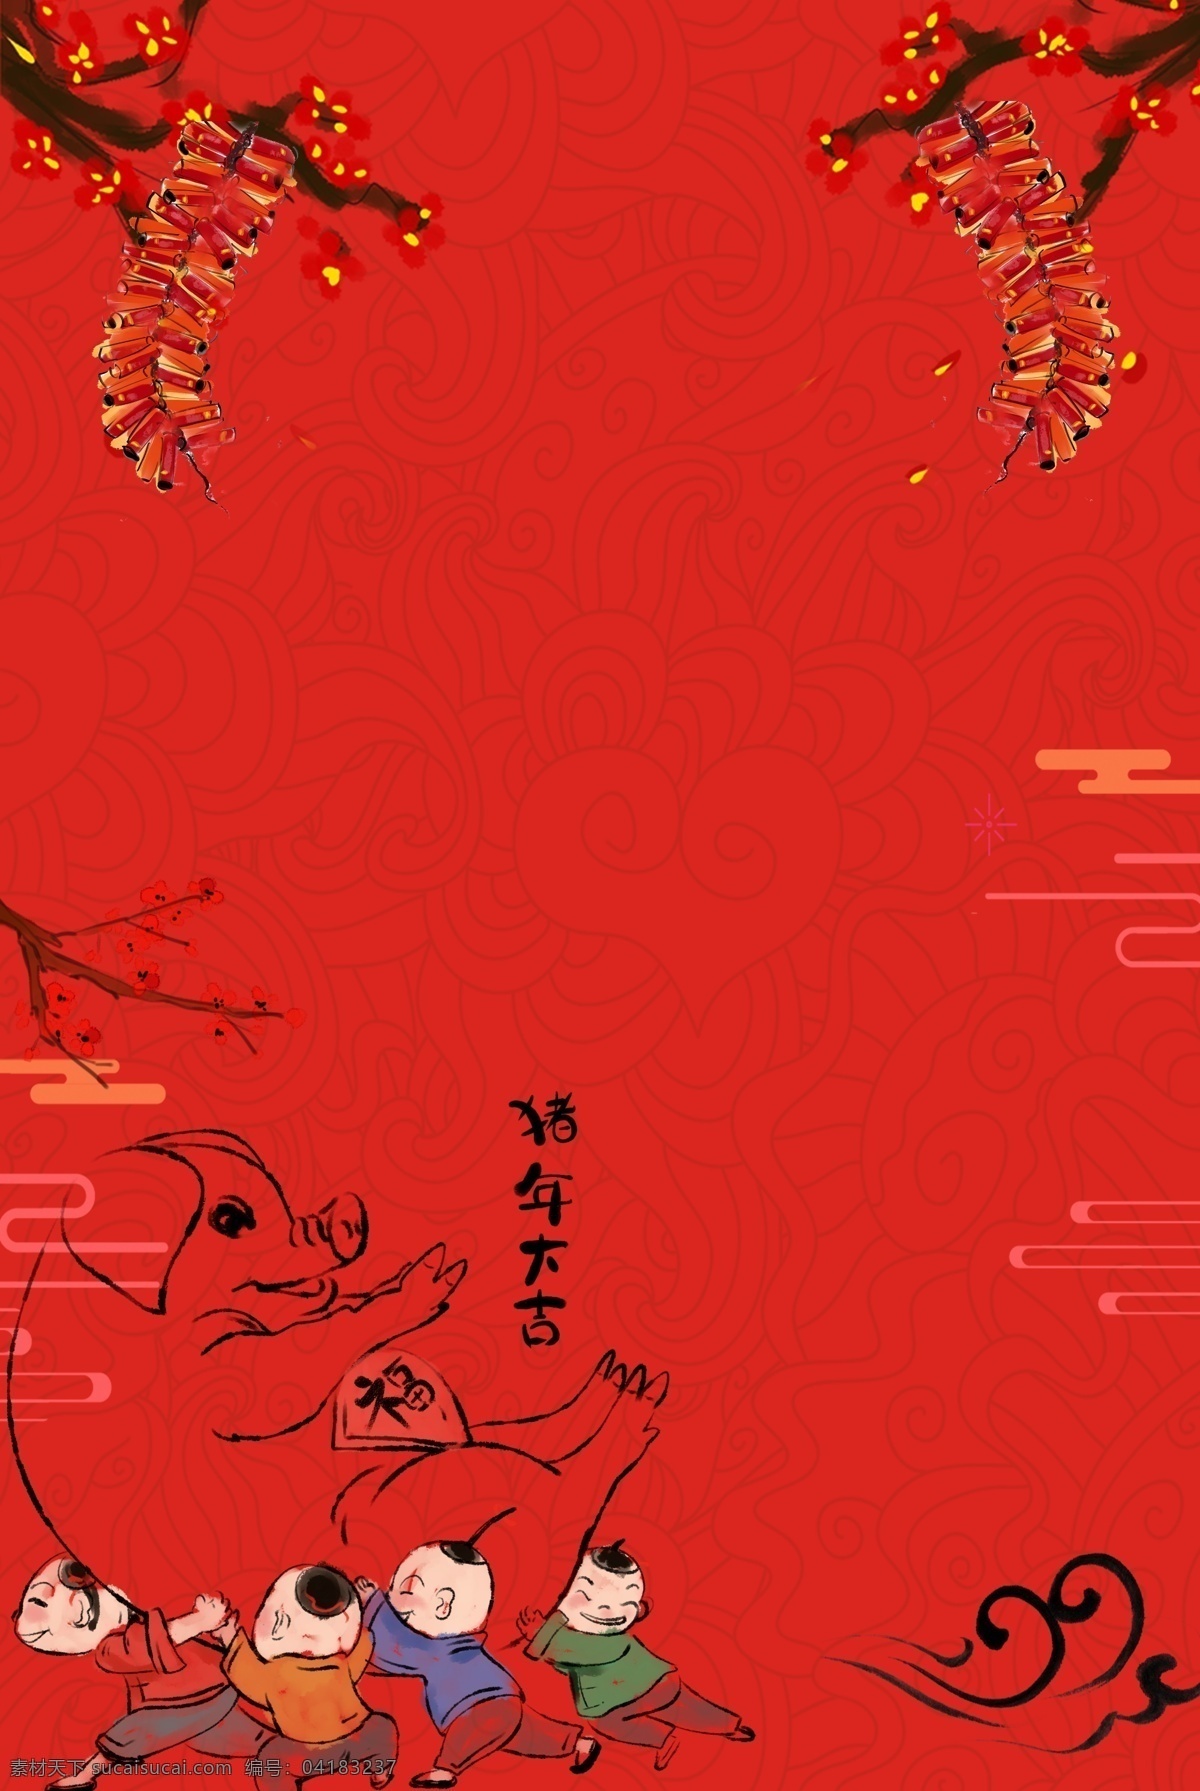 新年 签 中国 风 水墨 红色 海报 背景 新年签 求签 过年 跨年 中国风 2019 猪年 鞭炮